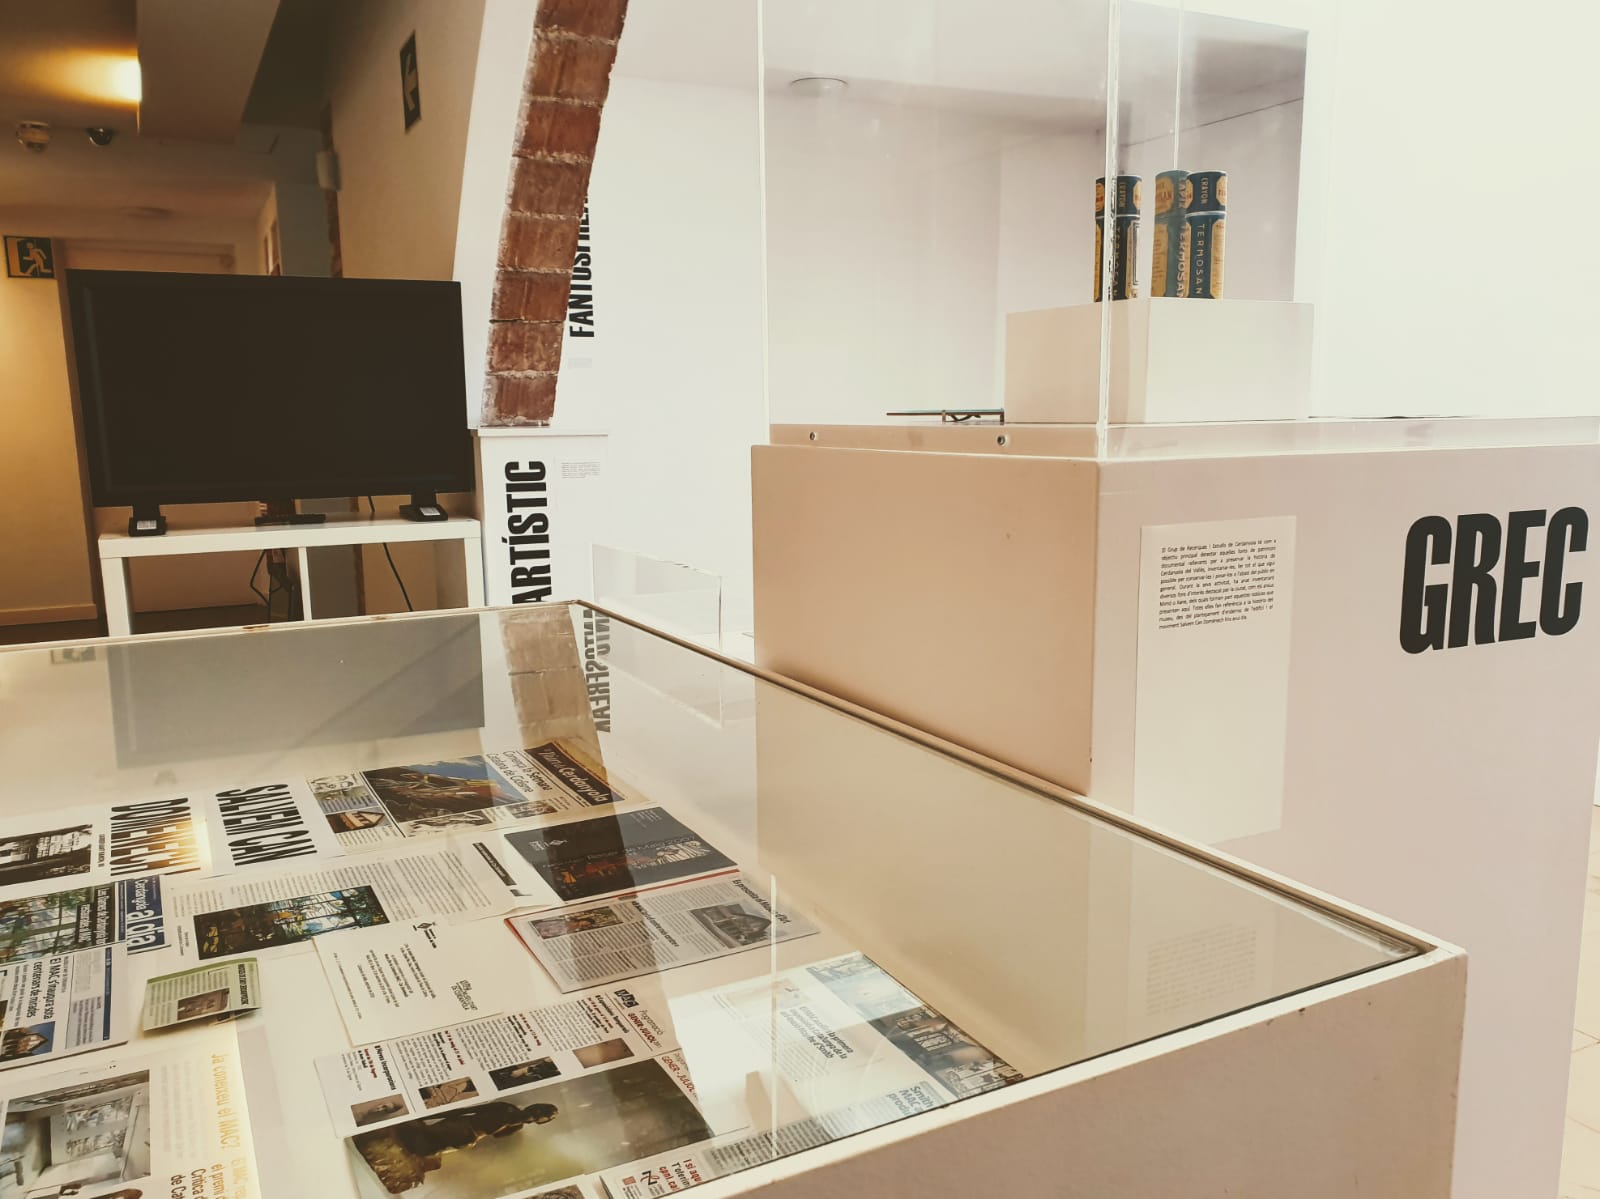 A la mostra, el GREC presenta un recull de documents de diferents fons, tots ells referents a la història del museu | Cedida